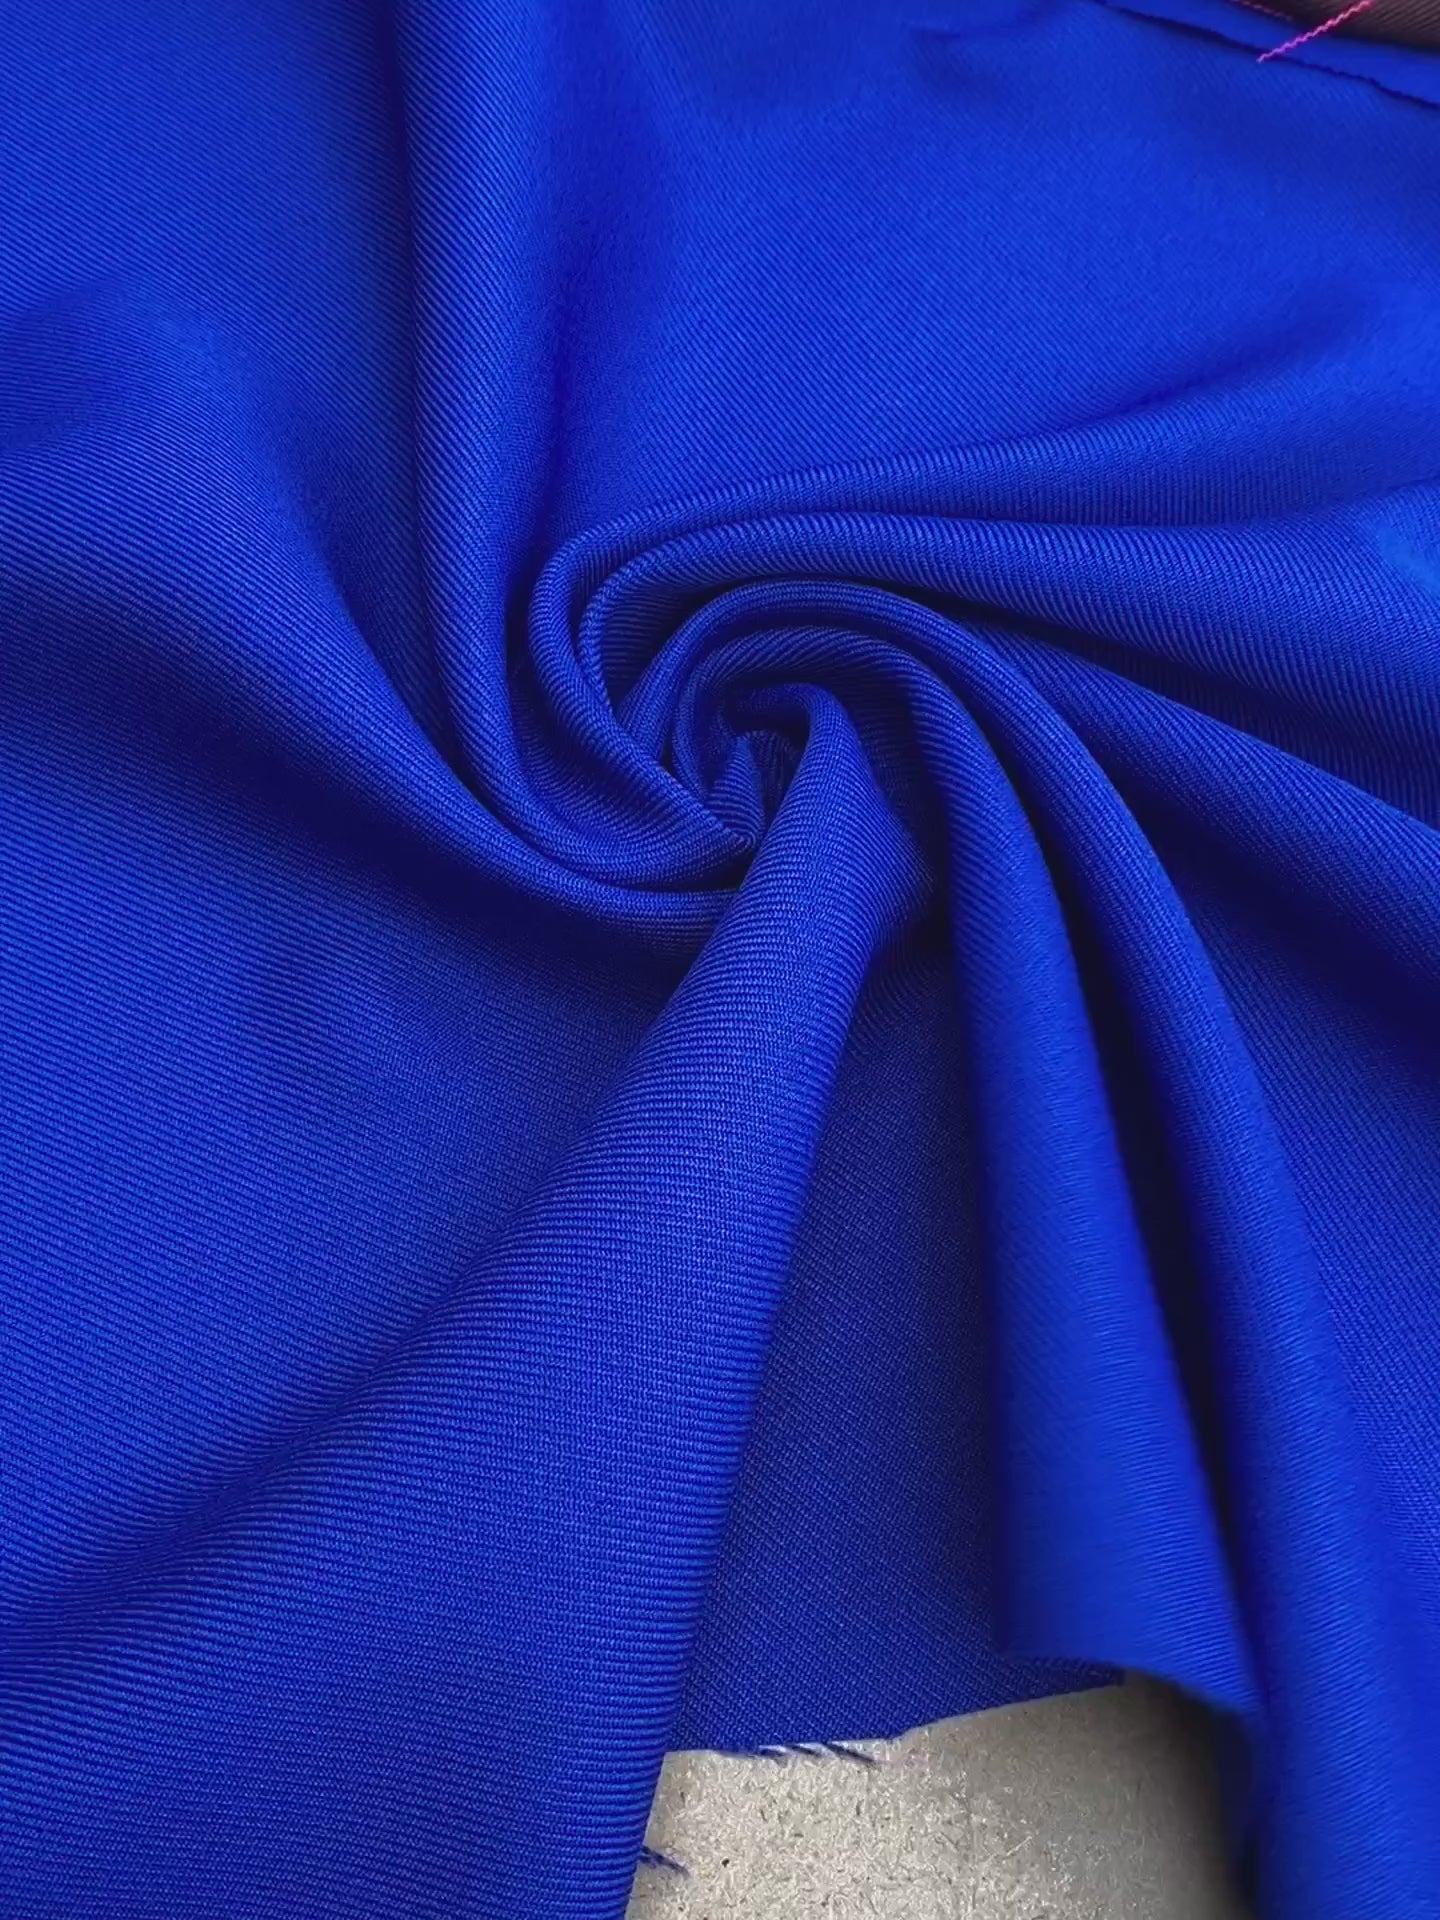 royal blue delaney gabardine, blue gabardine fabric, light blue gabardine fabric, dark blue blue gabardine, royal bue gabardine fabric for pants, teal blue gabardine fabric for suit, blue gabardine and crepe, turquoise gabardine fabric for gown